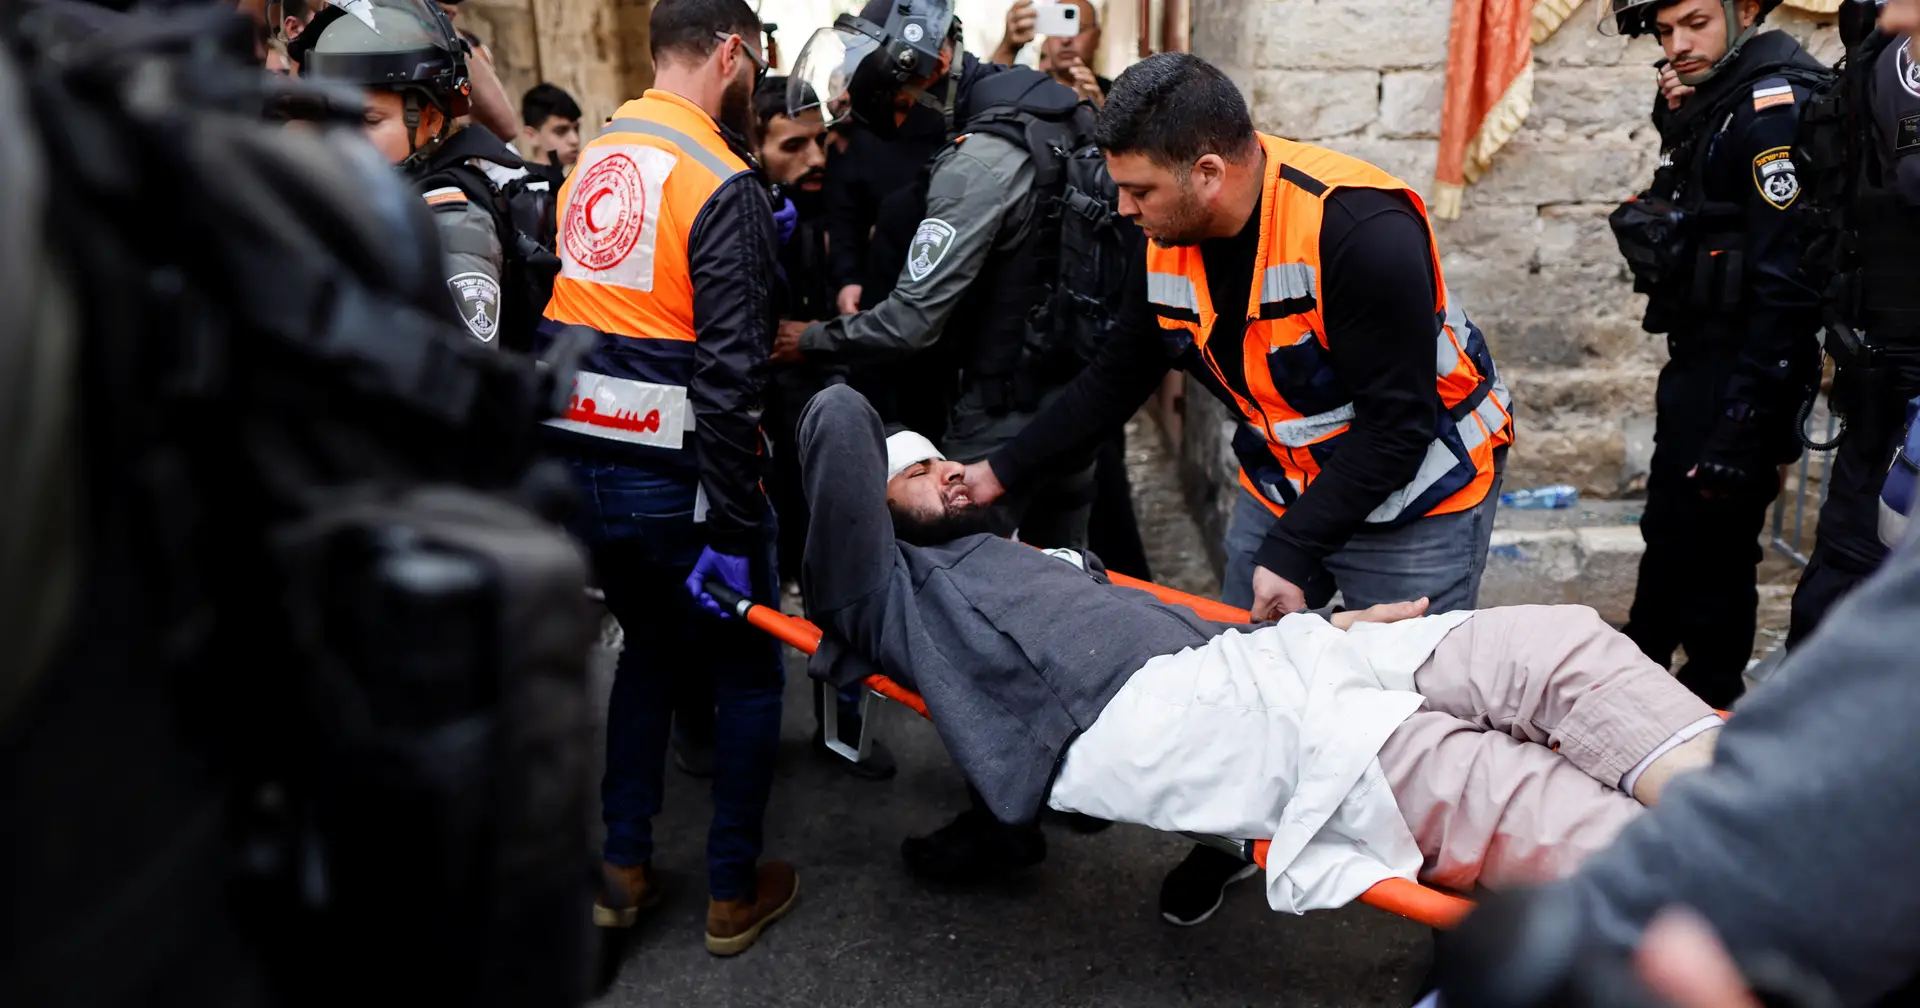 Dezassete palestinianos feridos em confrontos na Esplanada das Mesquitas em Jerusalém